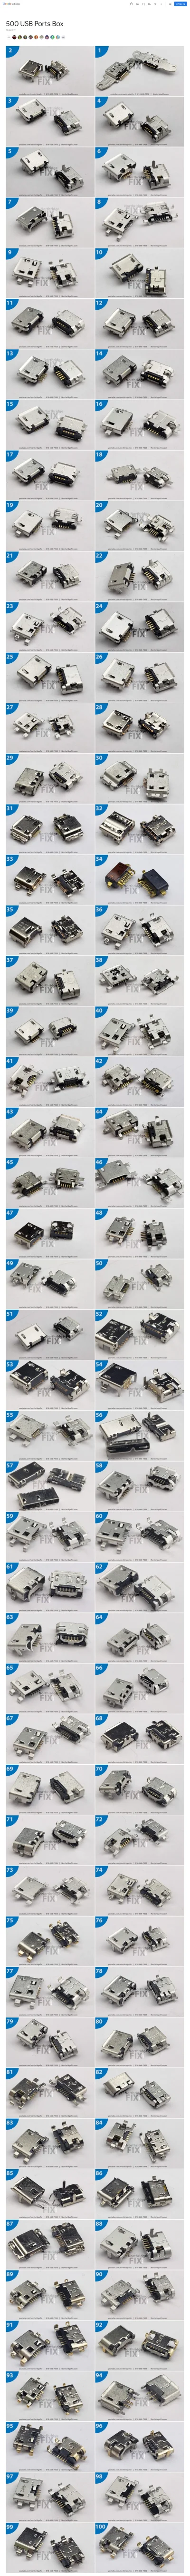 makrofag74 - #usb #elektronika #majsterkowanie 

Jakby ktoś szukał portu USB...

...